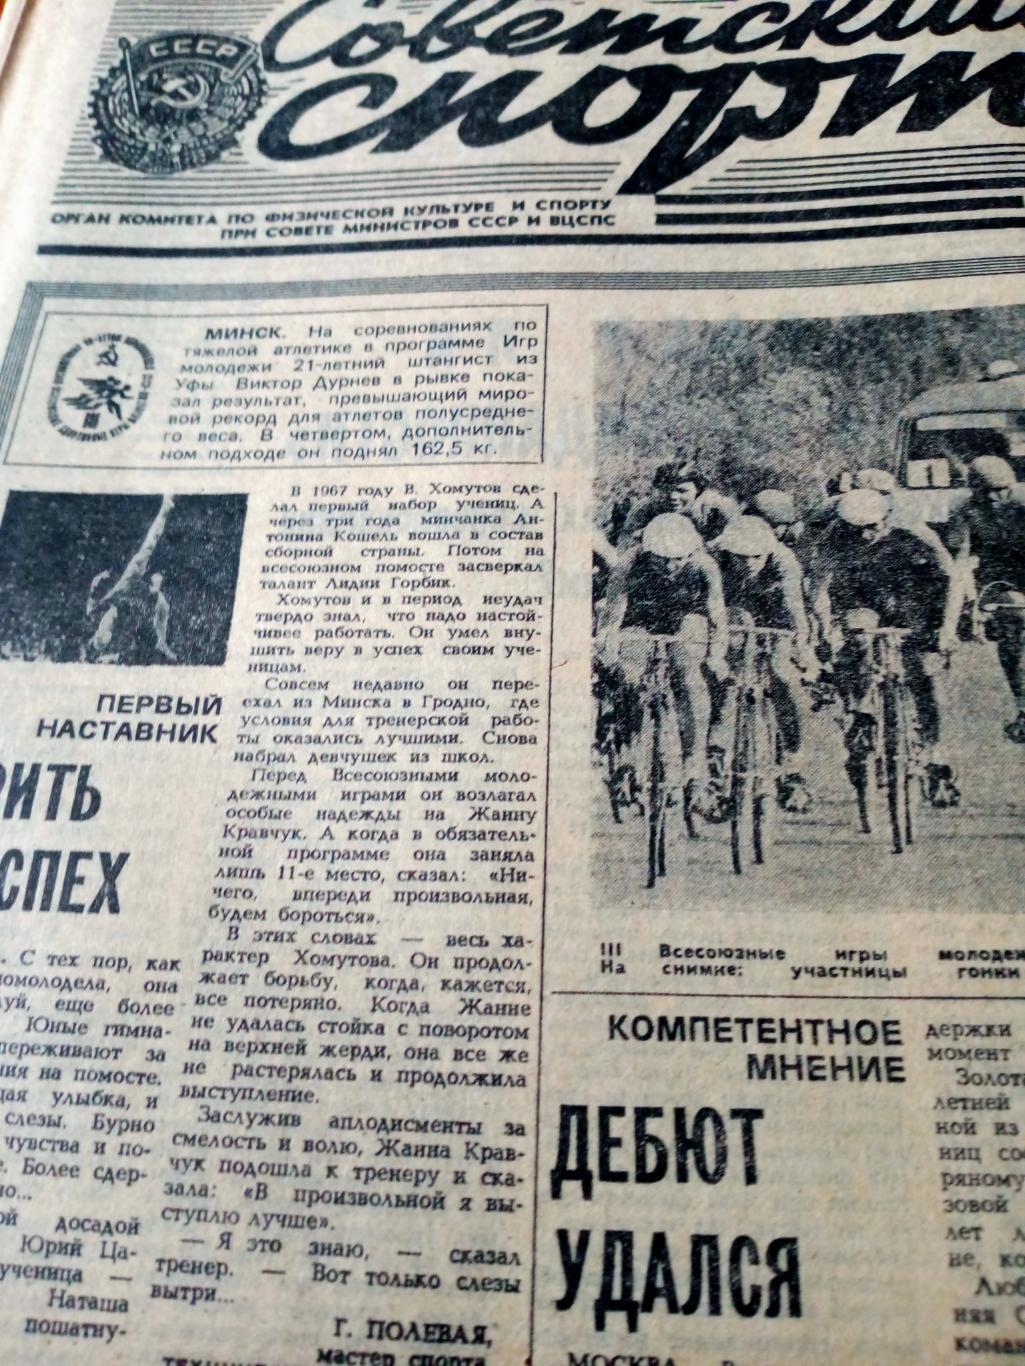 Футбол. ЧМ. Испания. Советский спорт. 1982 год. 24 июля